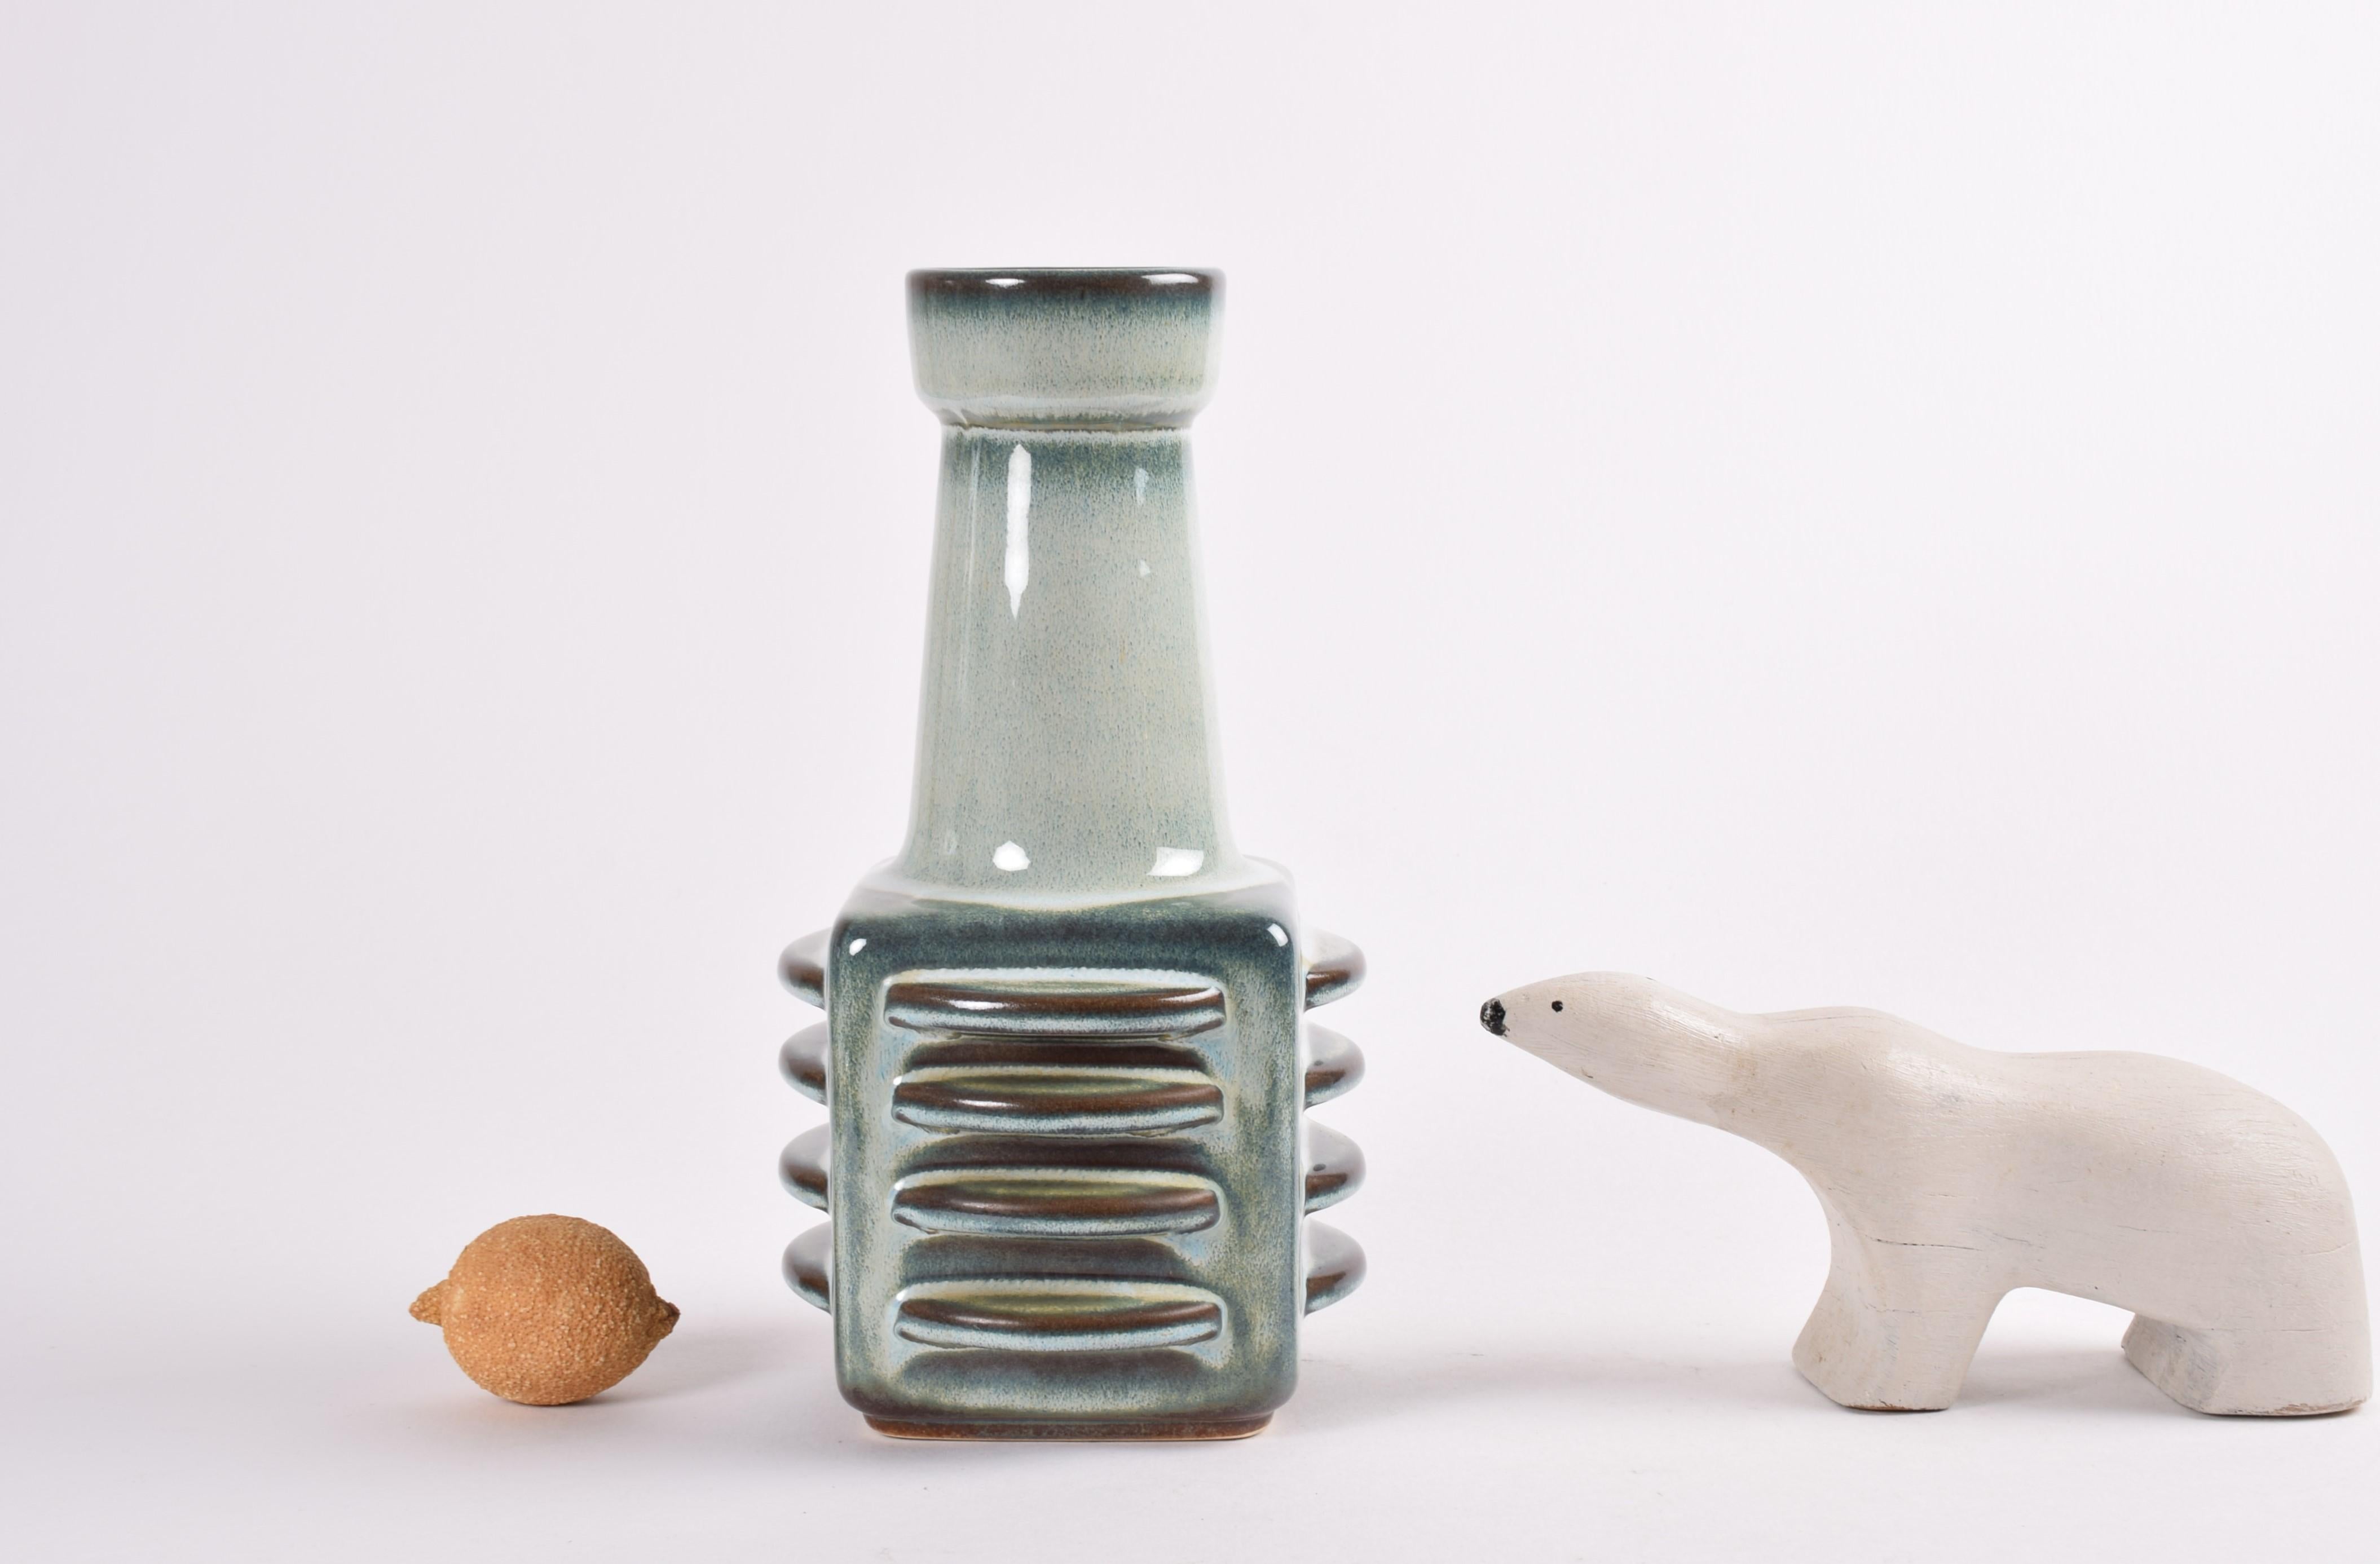 Mid-Century Modern Danish 1960s Søholm Tall Sculptural Ceramic Vase by Einar Johansen, Green Glaze